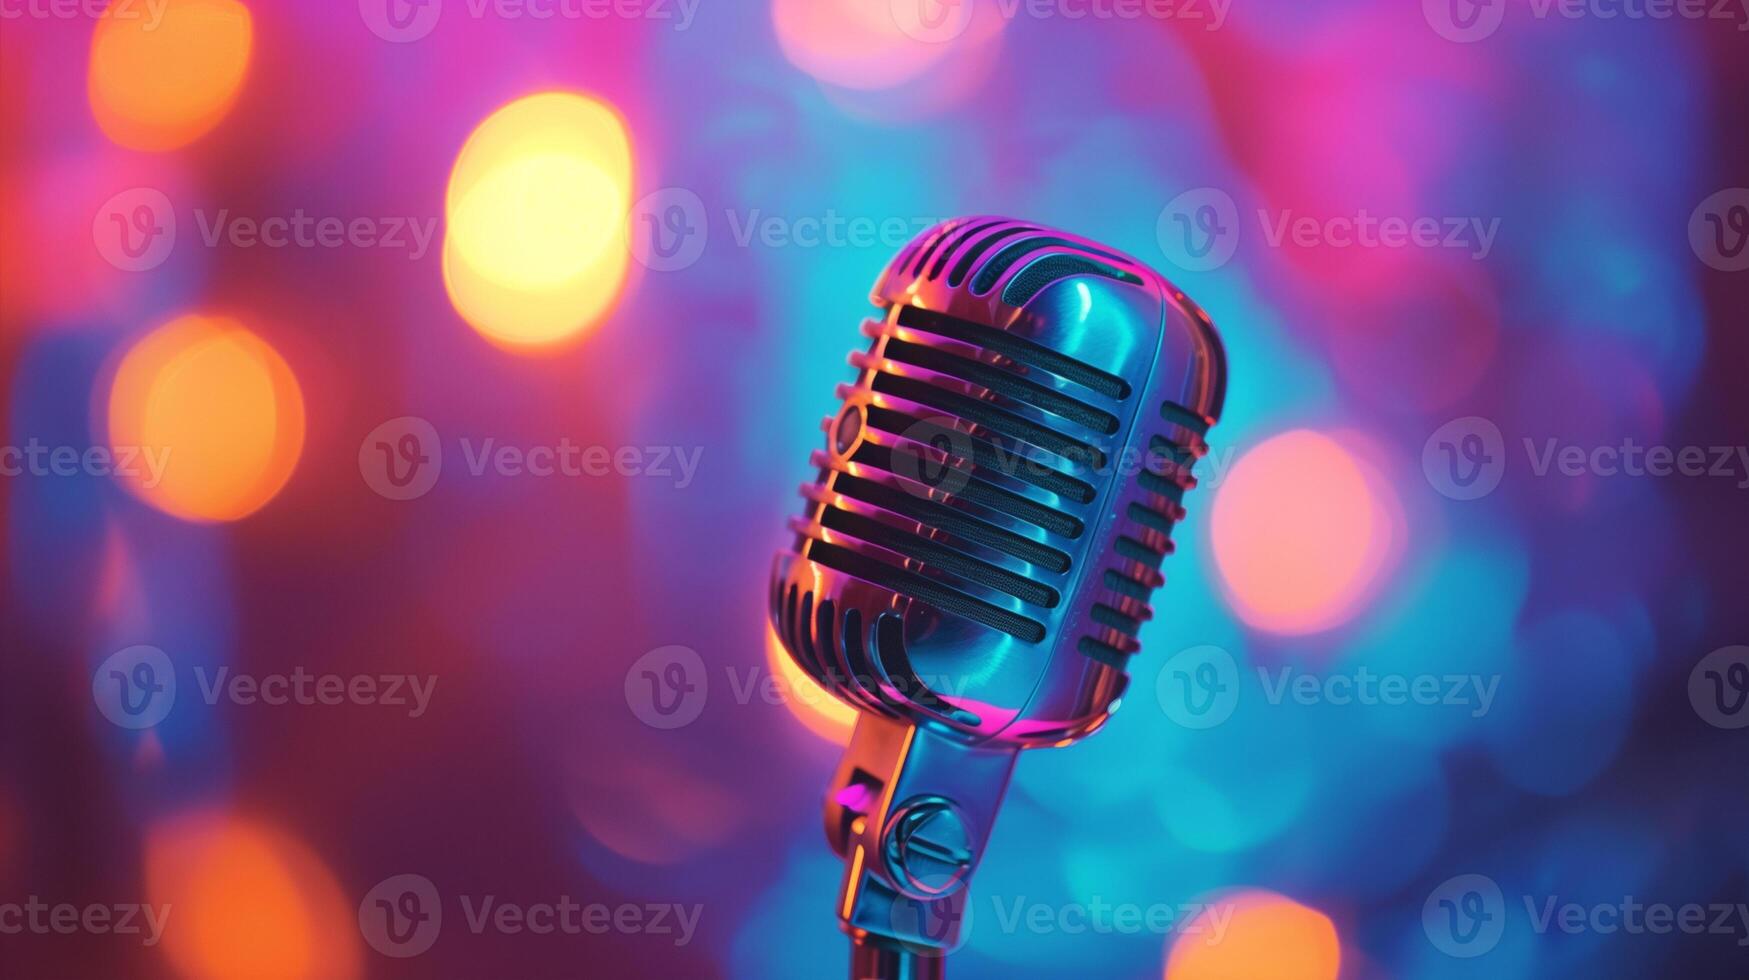 micrófono grabar sonido en profesional música voz estudio en resumen antecedentes. foto